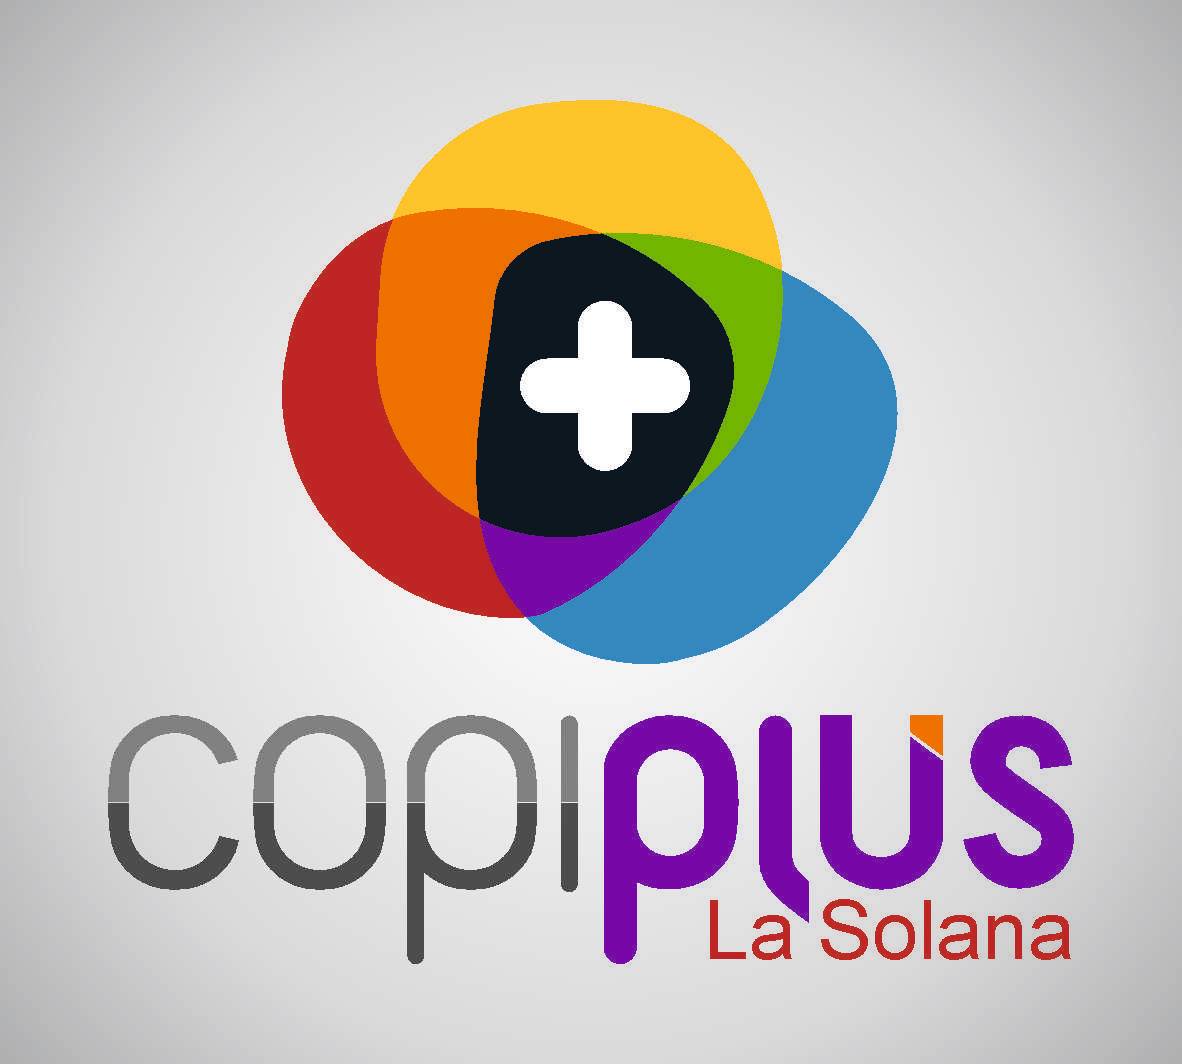 Copiplus La Solana